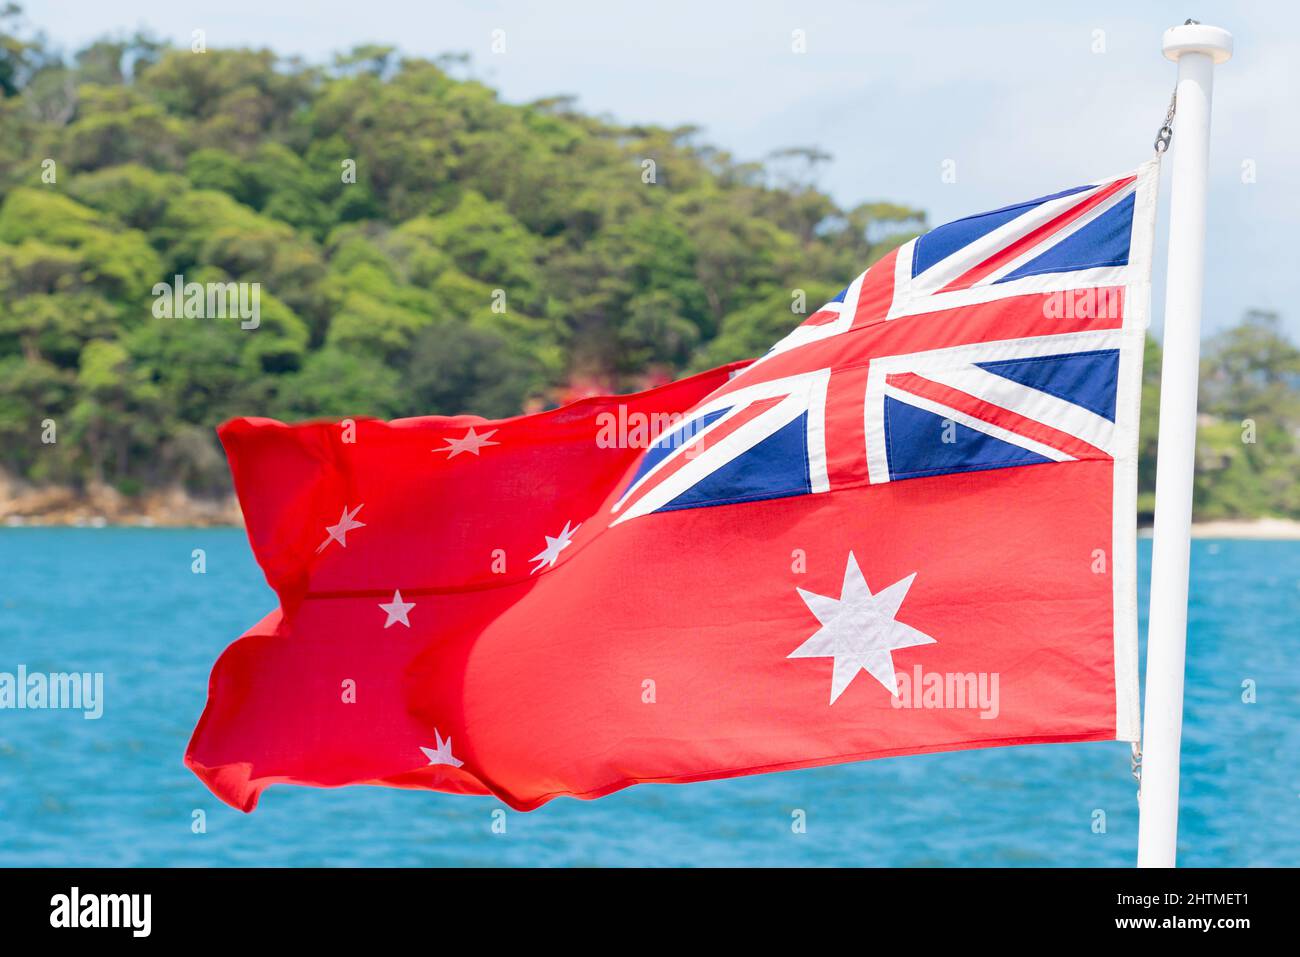 Le Red Ensign australien est le drapeau utilisé par la marine marchande australienne, en tant que distinct du drapeau national australien utilisé par le gouvernement fédéral Banque D'Images